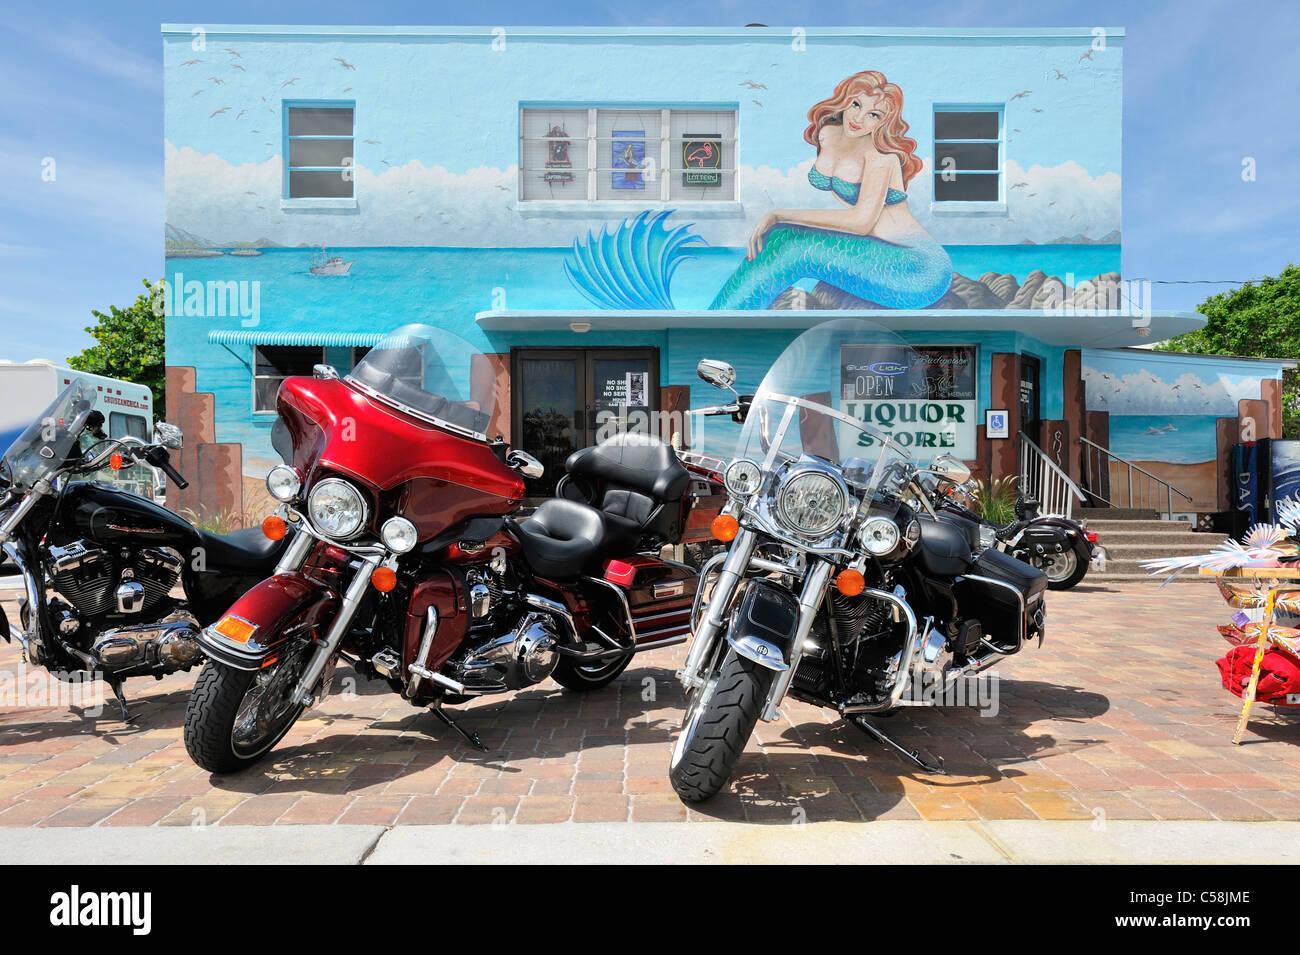 Motos, tienda de licores, el Mermaid, Mural, Fort Myers Beach, Florida, Estados Unidos, Estados Unidos, América, bicicletas Foto de stock